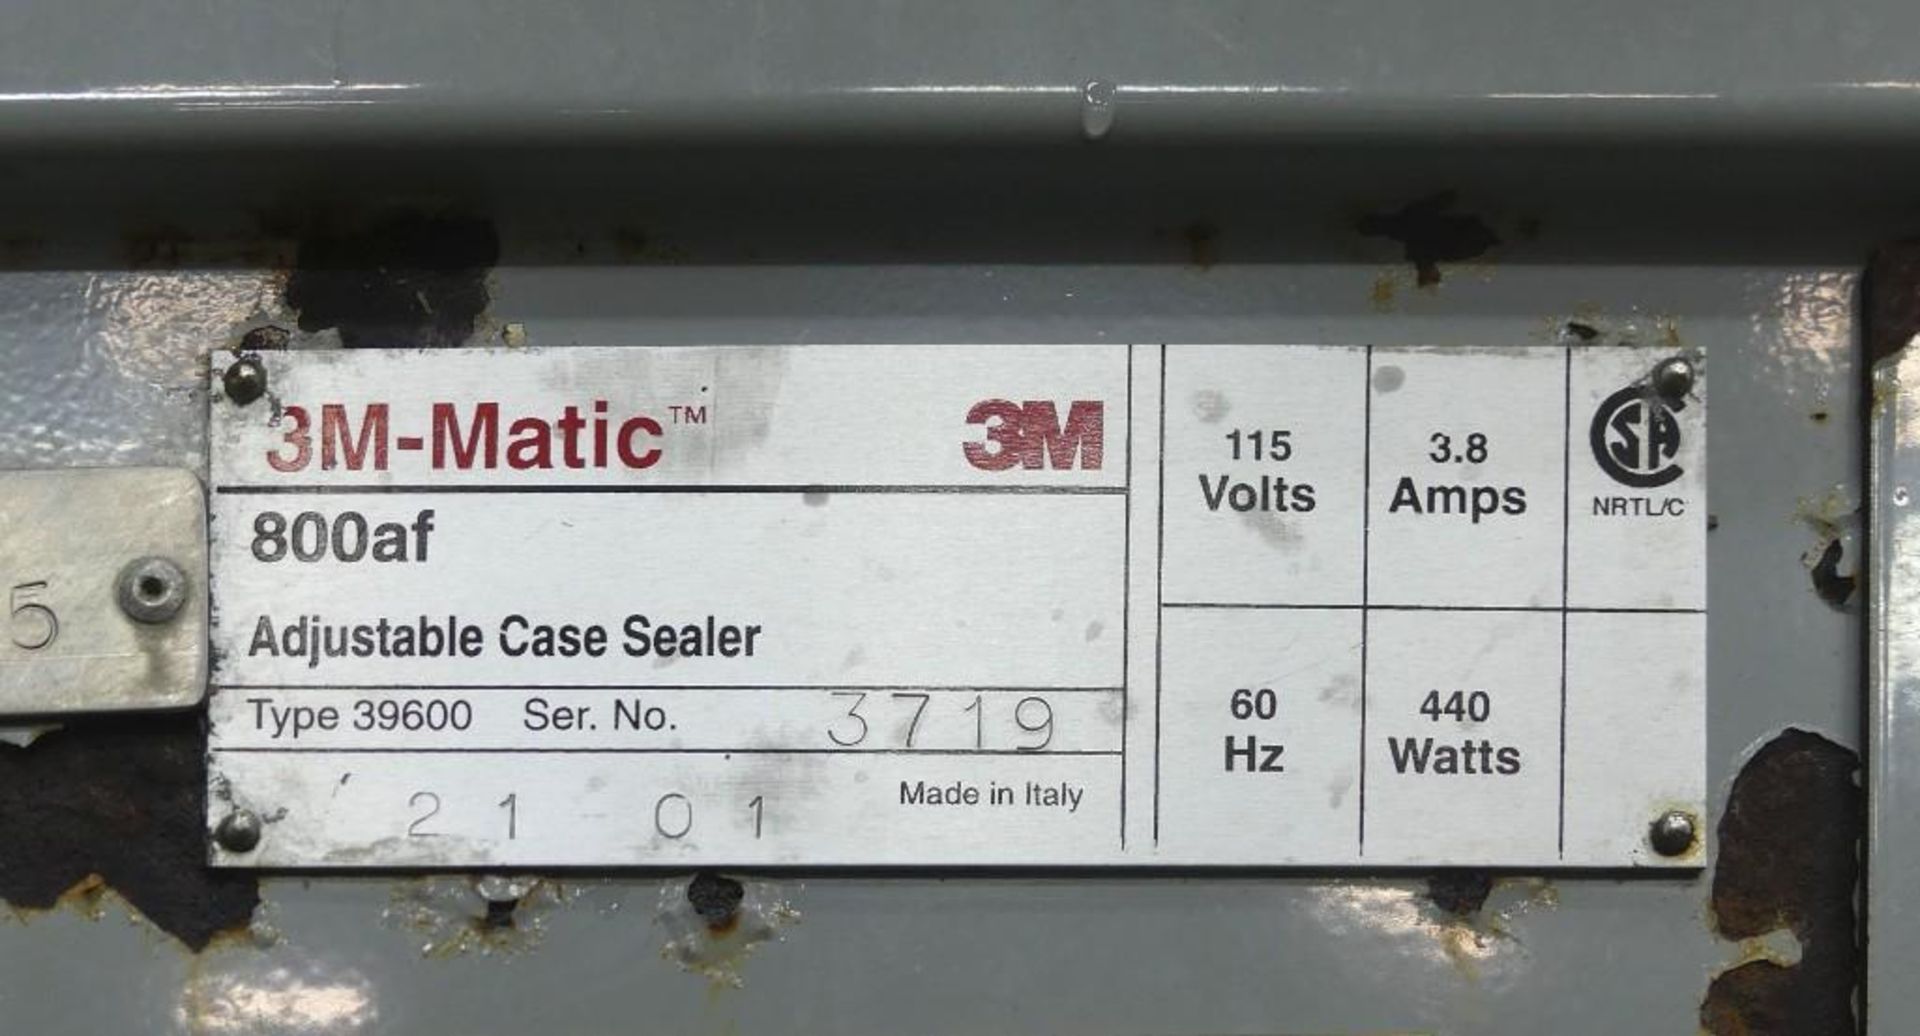 3M 800af Adjustable Automatic Top Tape Case Sealer - Image 14 of 15